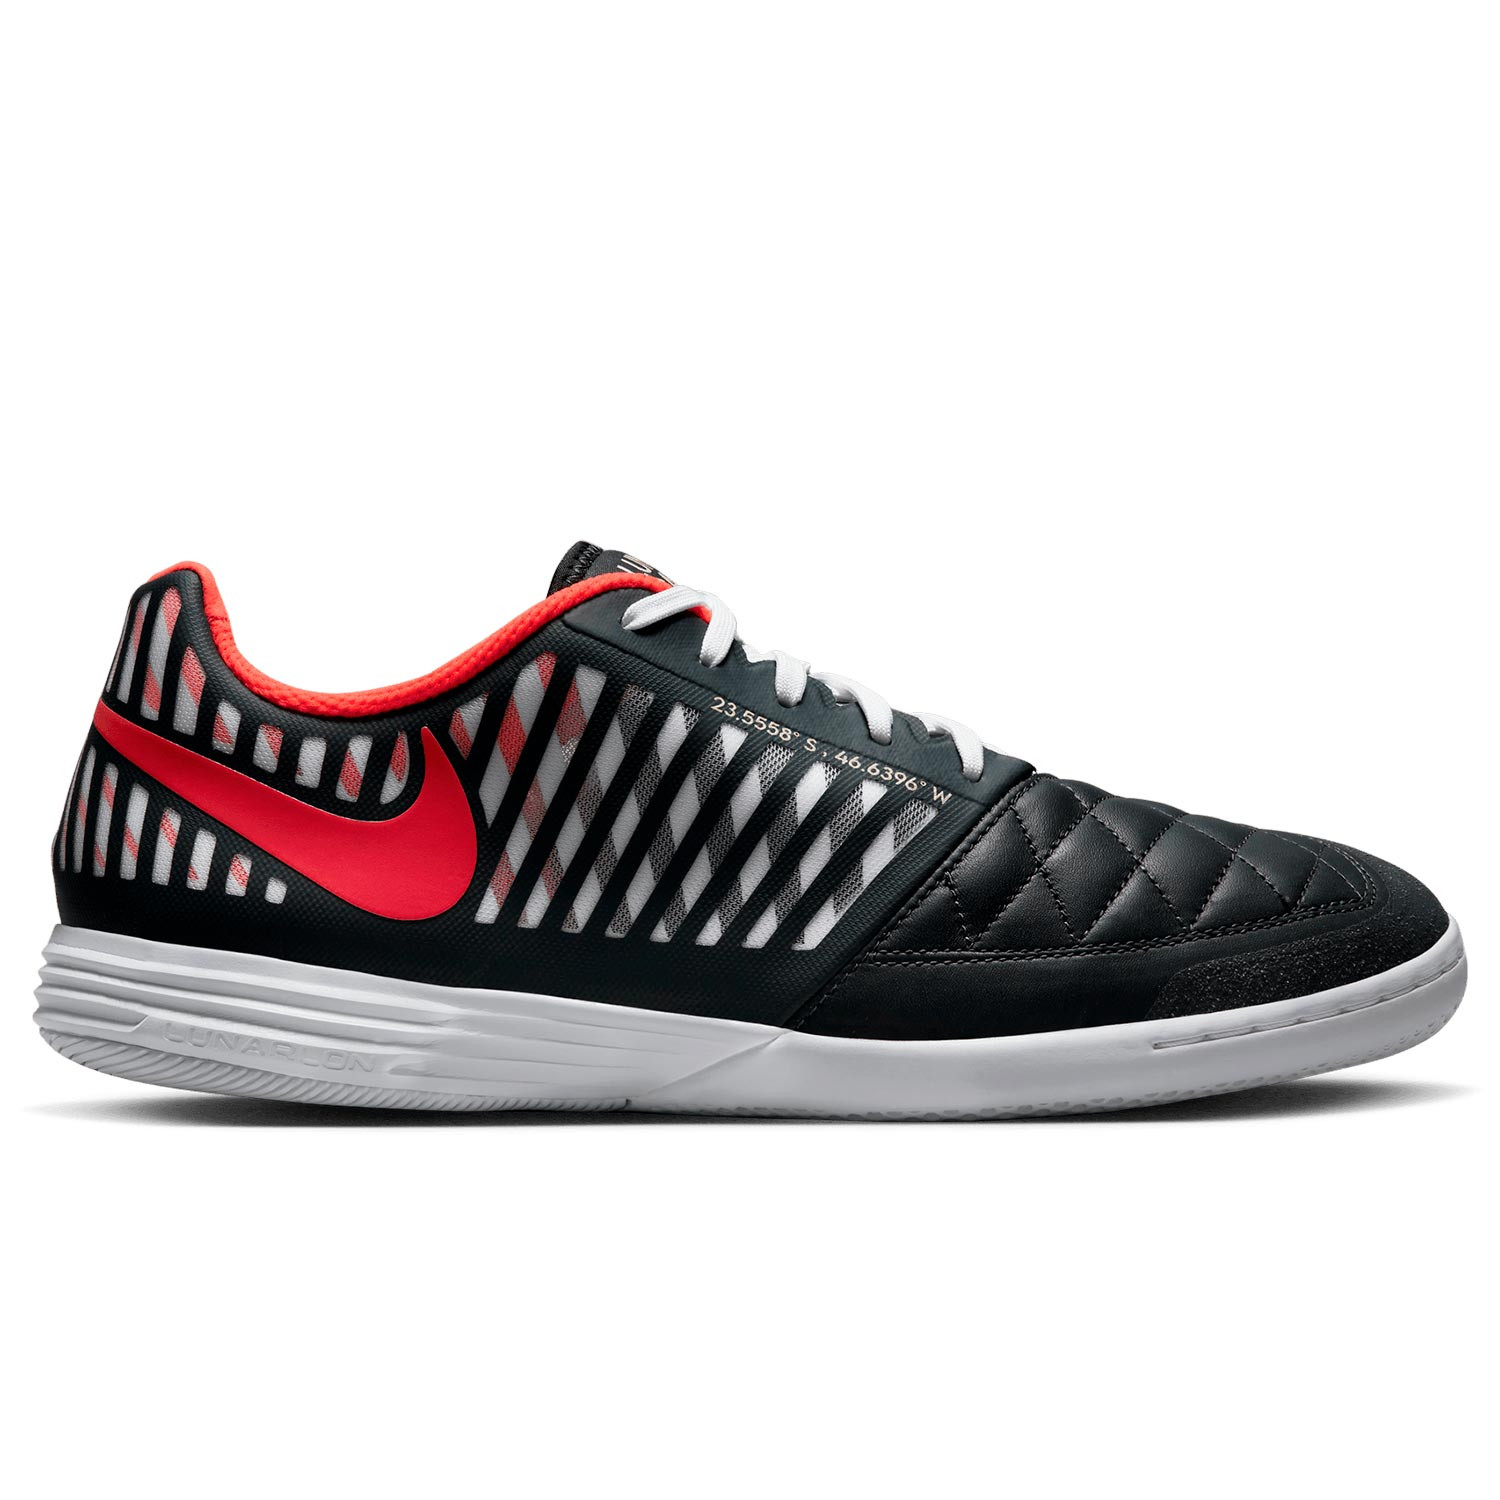 Identificar Fuera de borda Sustancialmente Zapatillas futsal Nike Lunar Gato 2 negras y rojas | futbolmania